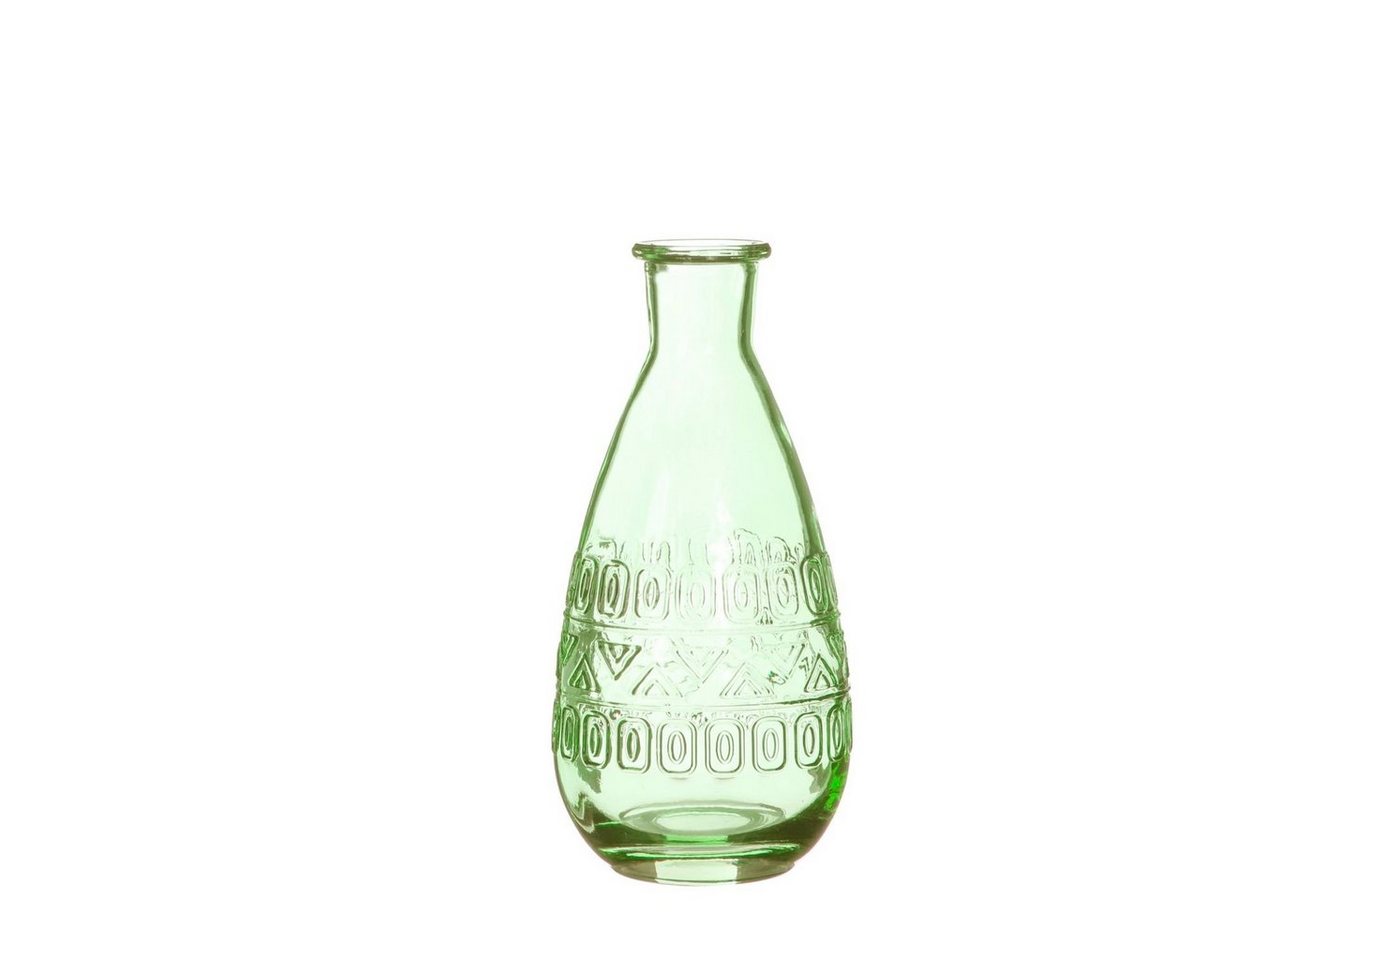 NaDeco Dekovase Glas Flasche Rome in Hellgrün h. 15,8 cm Ø 7,5 cm von NaDeco